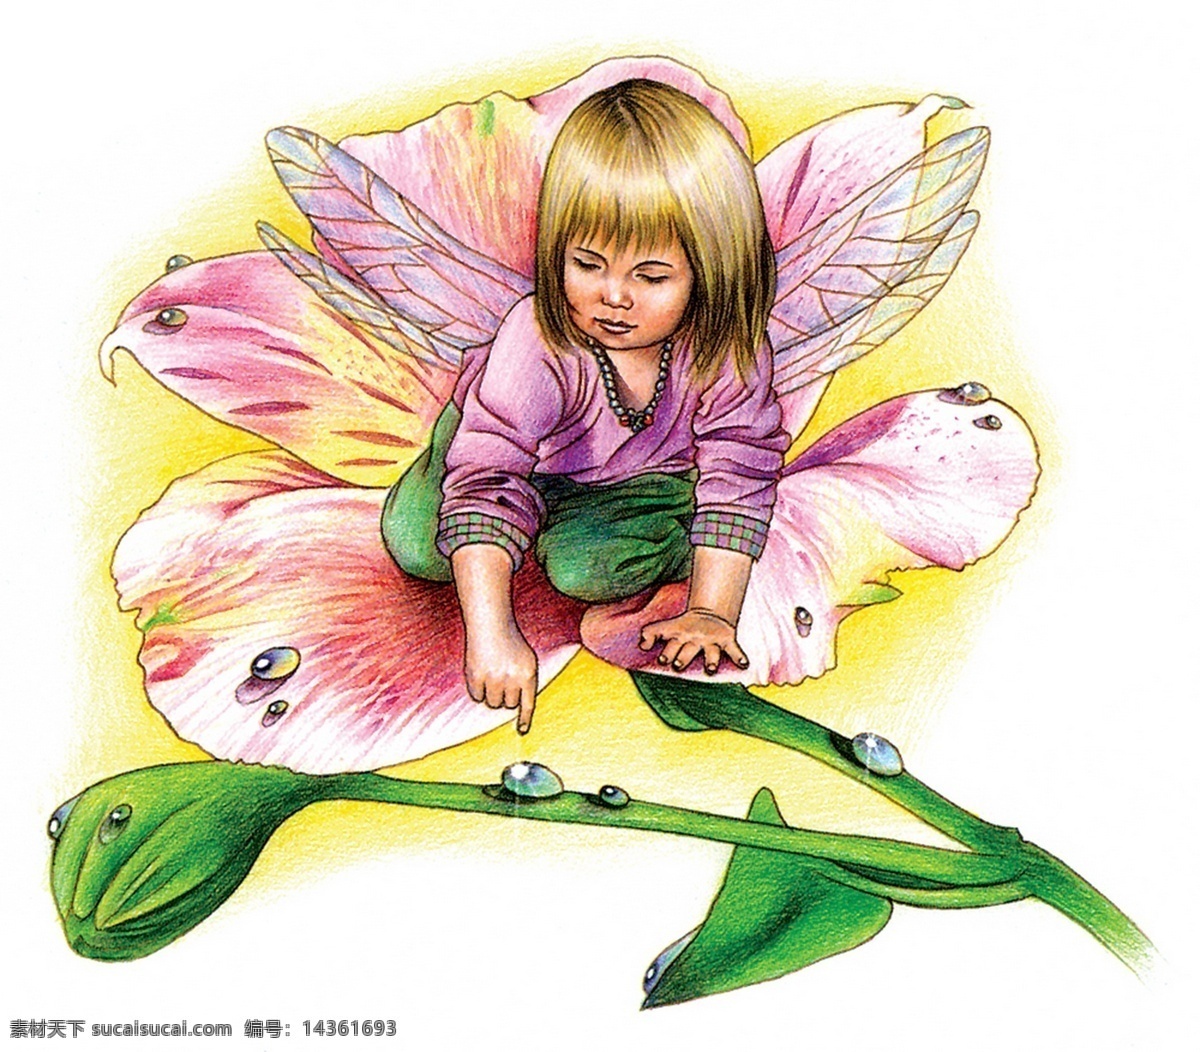 插画 插图 翅膀 动漫 花 绘画书法 精灵 绿叶 花朵与天使 小仙女 天使 欧洲 神话 童话 文化艺术 插画集